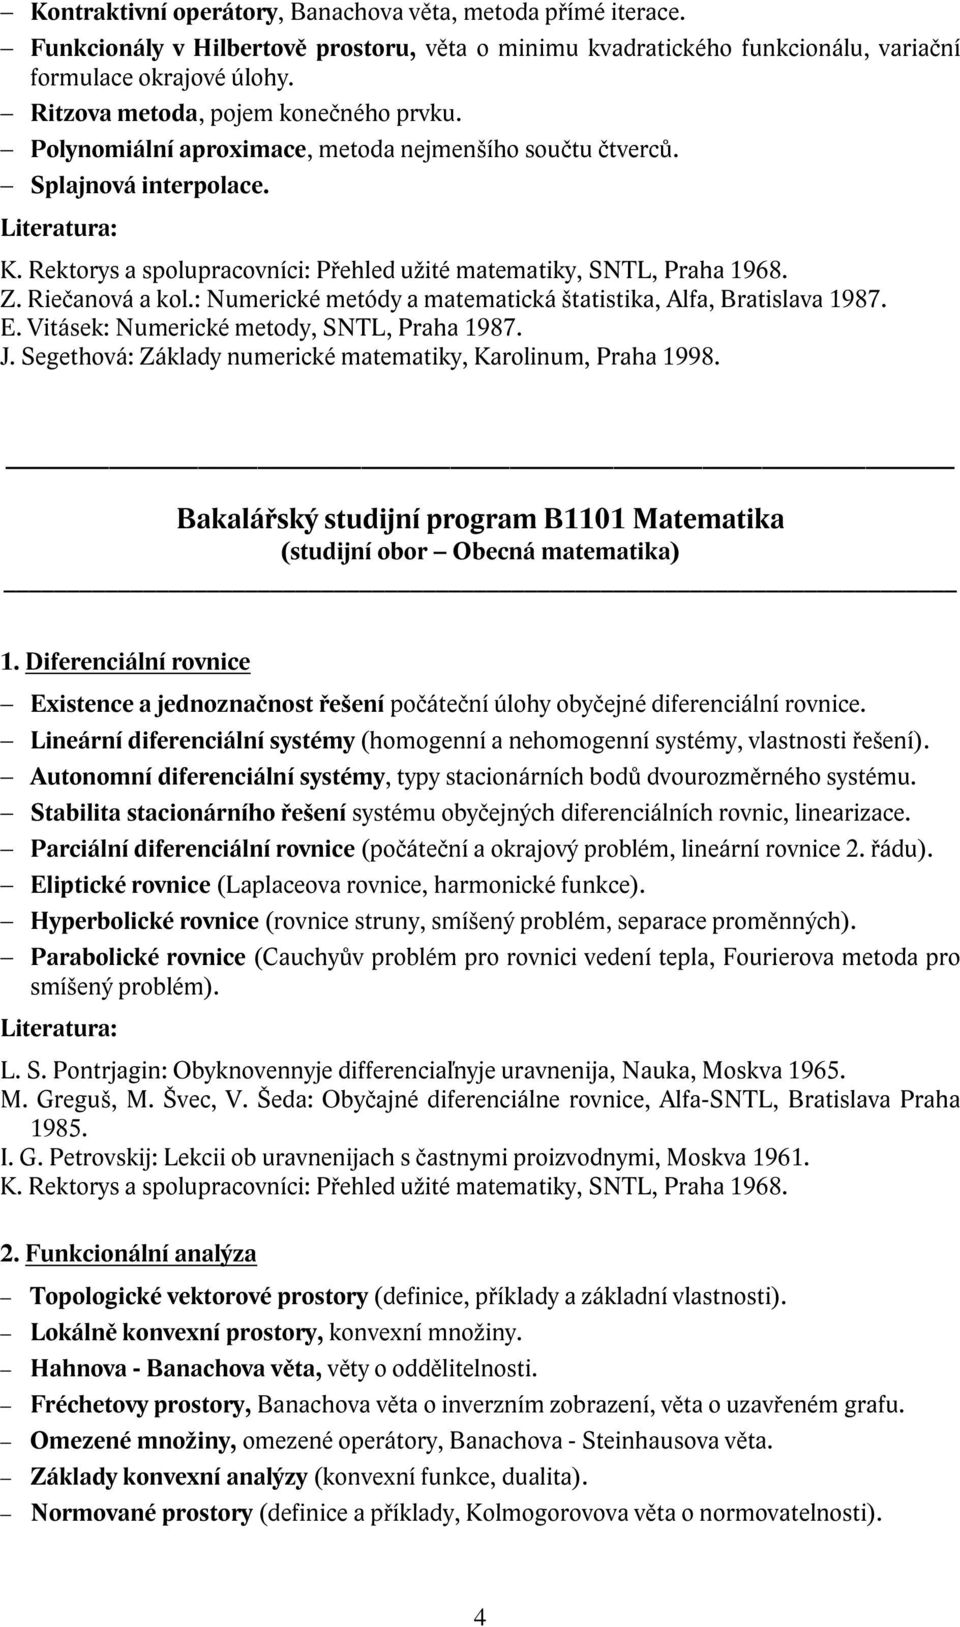 Riečanová a kol.: Numerické metódy a matematická štatistika, Alfa, Bratislava 1987. E. Vitásek: Numerické metody, SNTL, Praha 1987. J. Segethová: Základy numerické matematiky, Karolinum, Praha 1998.